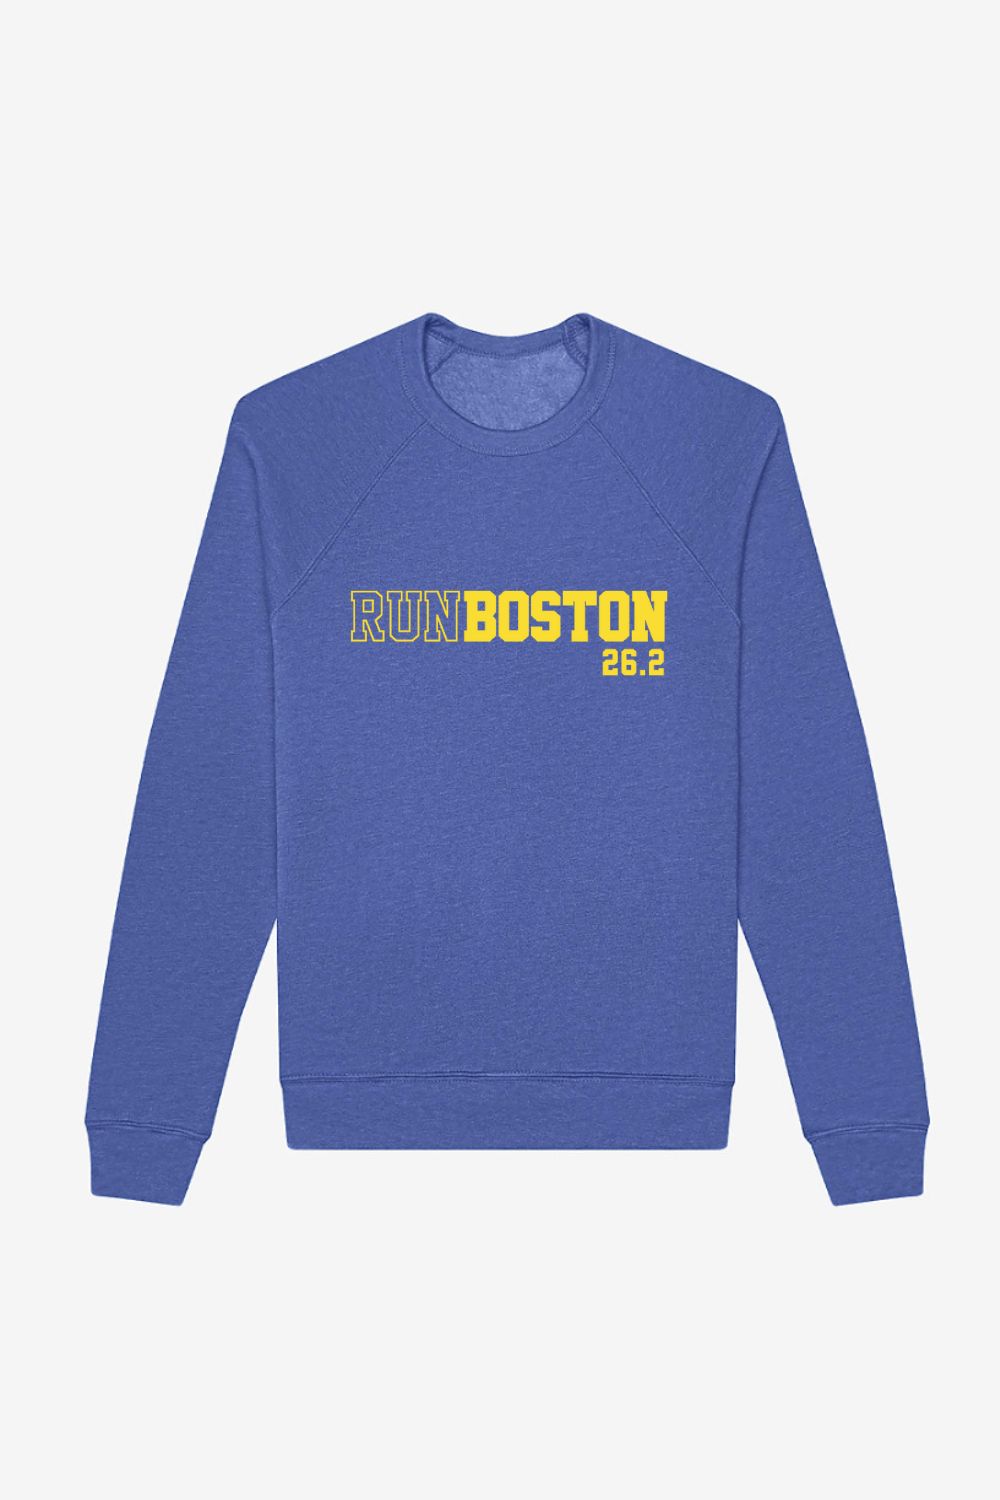 Run Boston 26.2 Sweatshirt